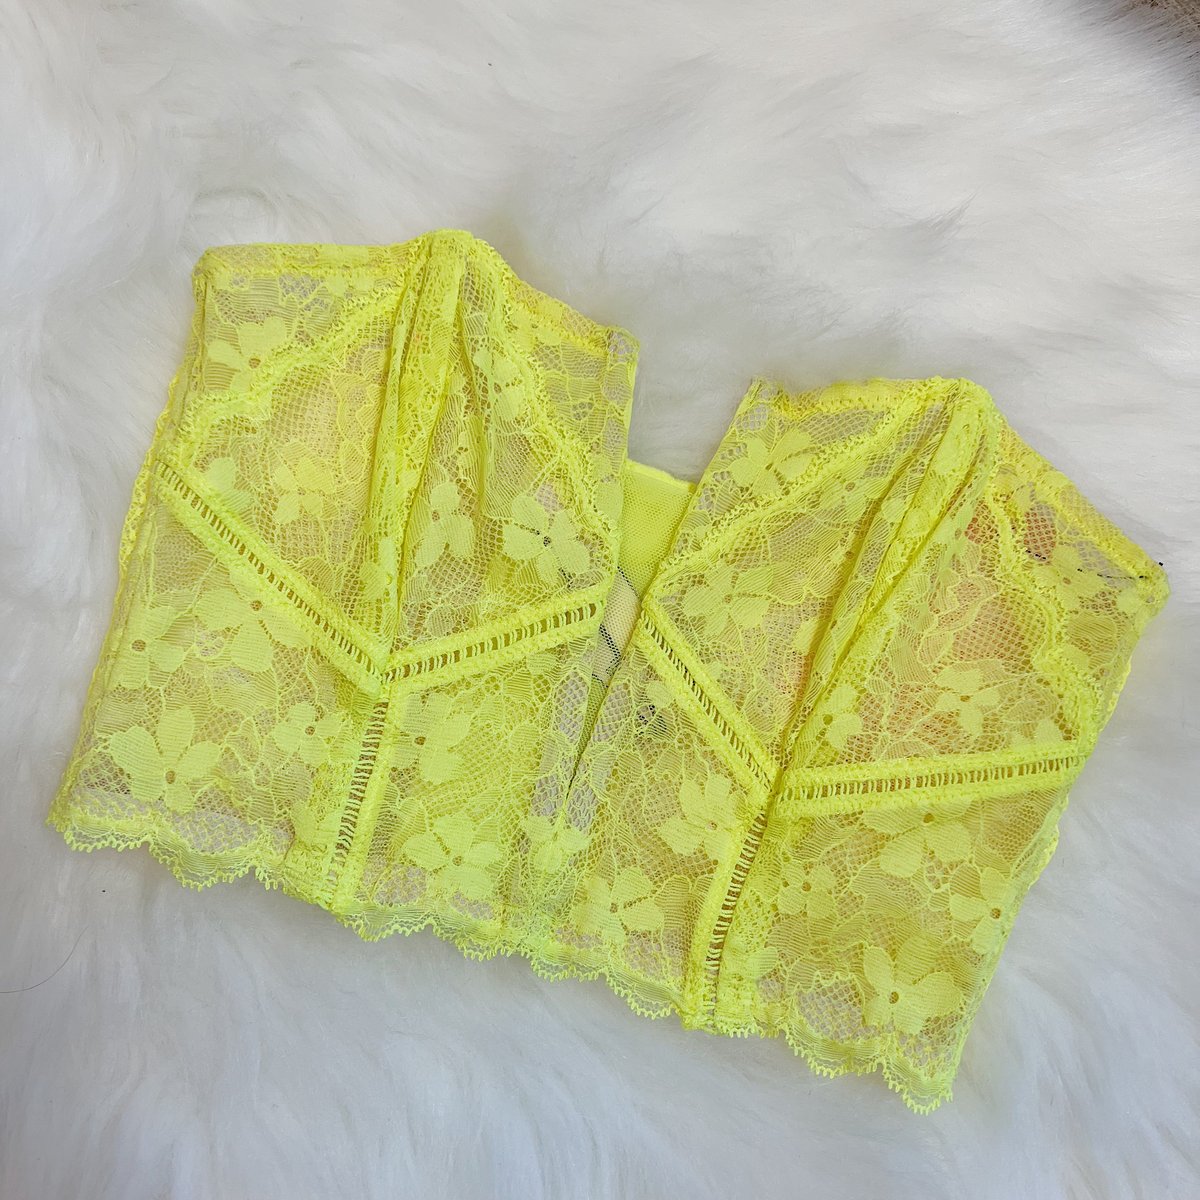 Sizes XS & M/L - Victoria’s Secret Yellow Mesh Lace Bustier Top